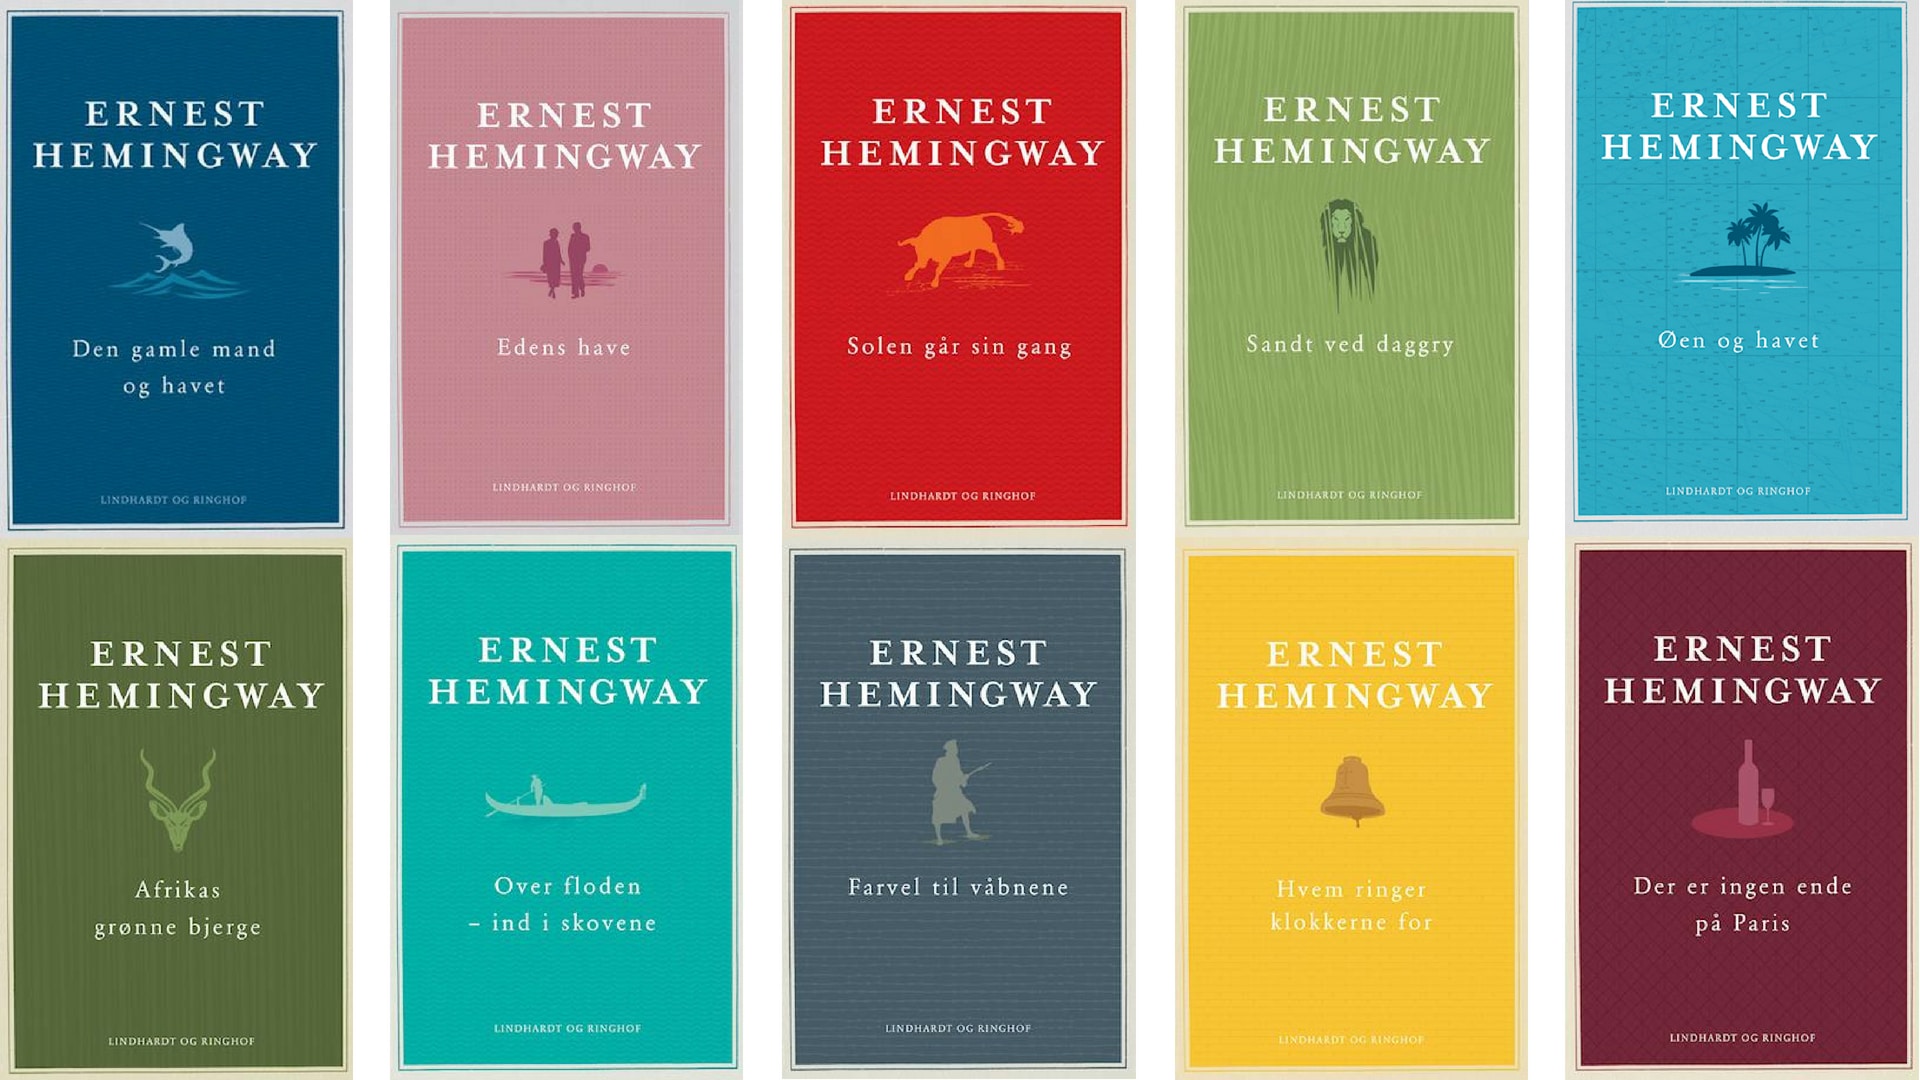 Hemingway, Ernest Hemingway, Klassikere, Kom i gang med Hemingway, Lotte Kaa Andersen om Hemingway, Læs klassikere